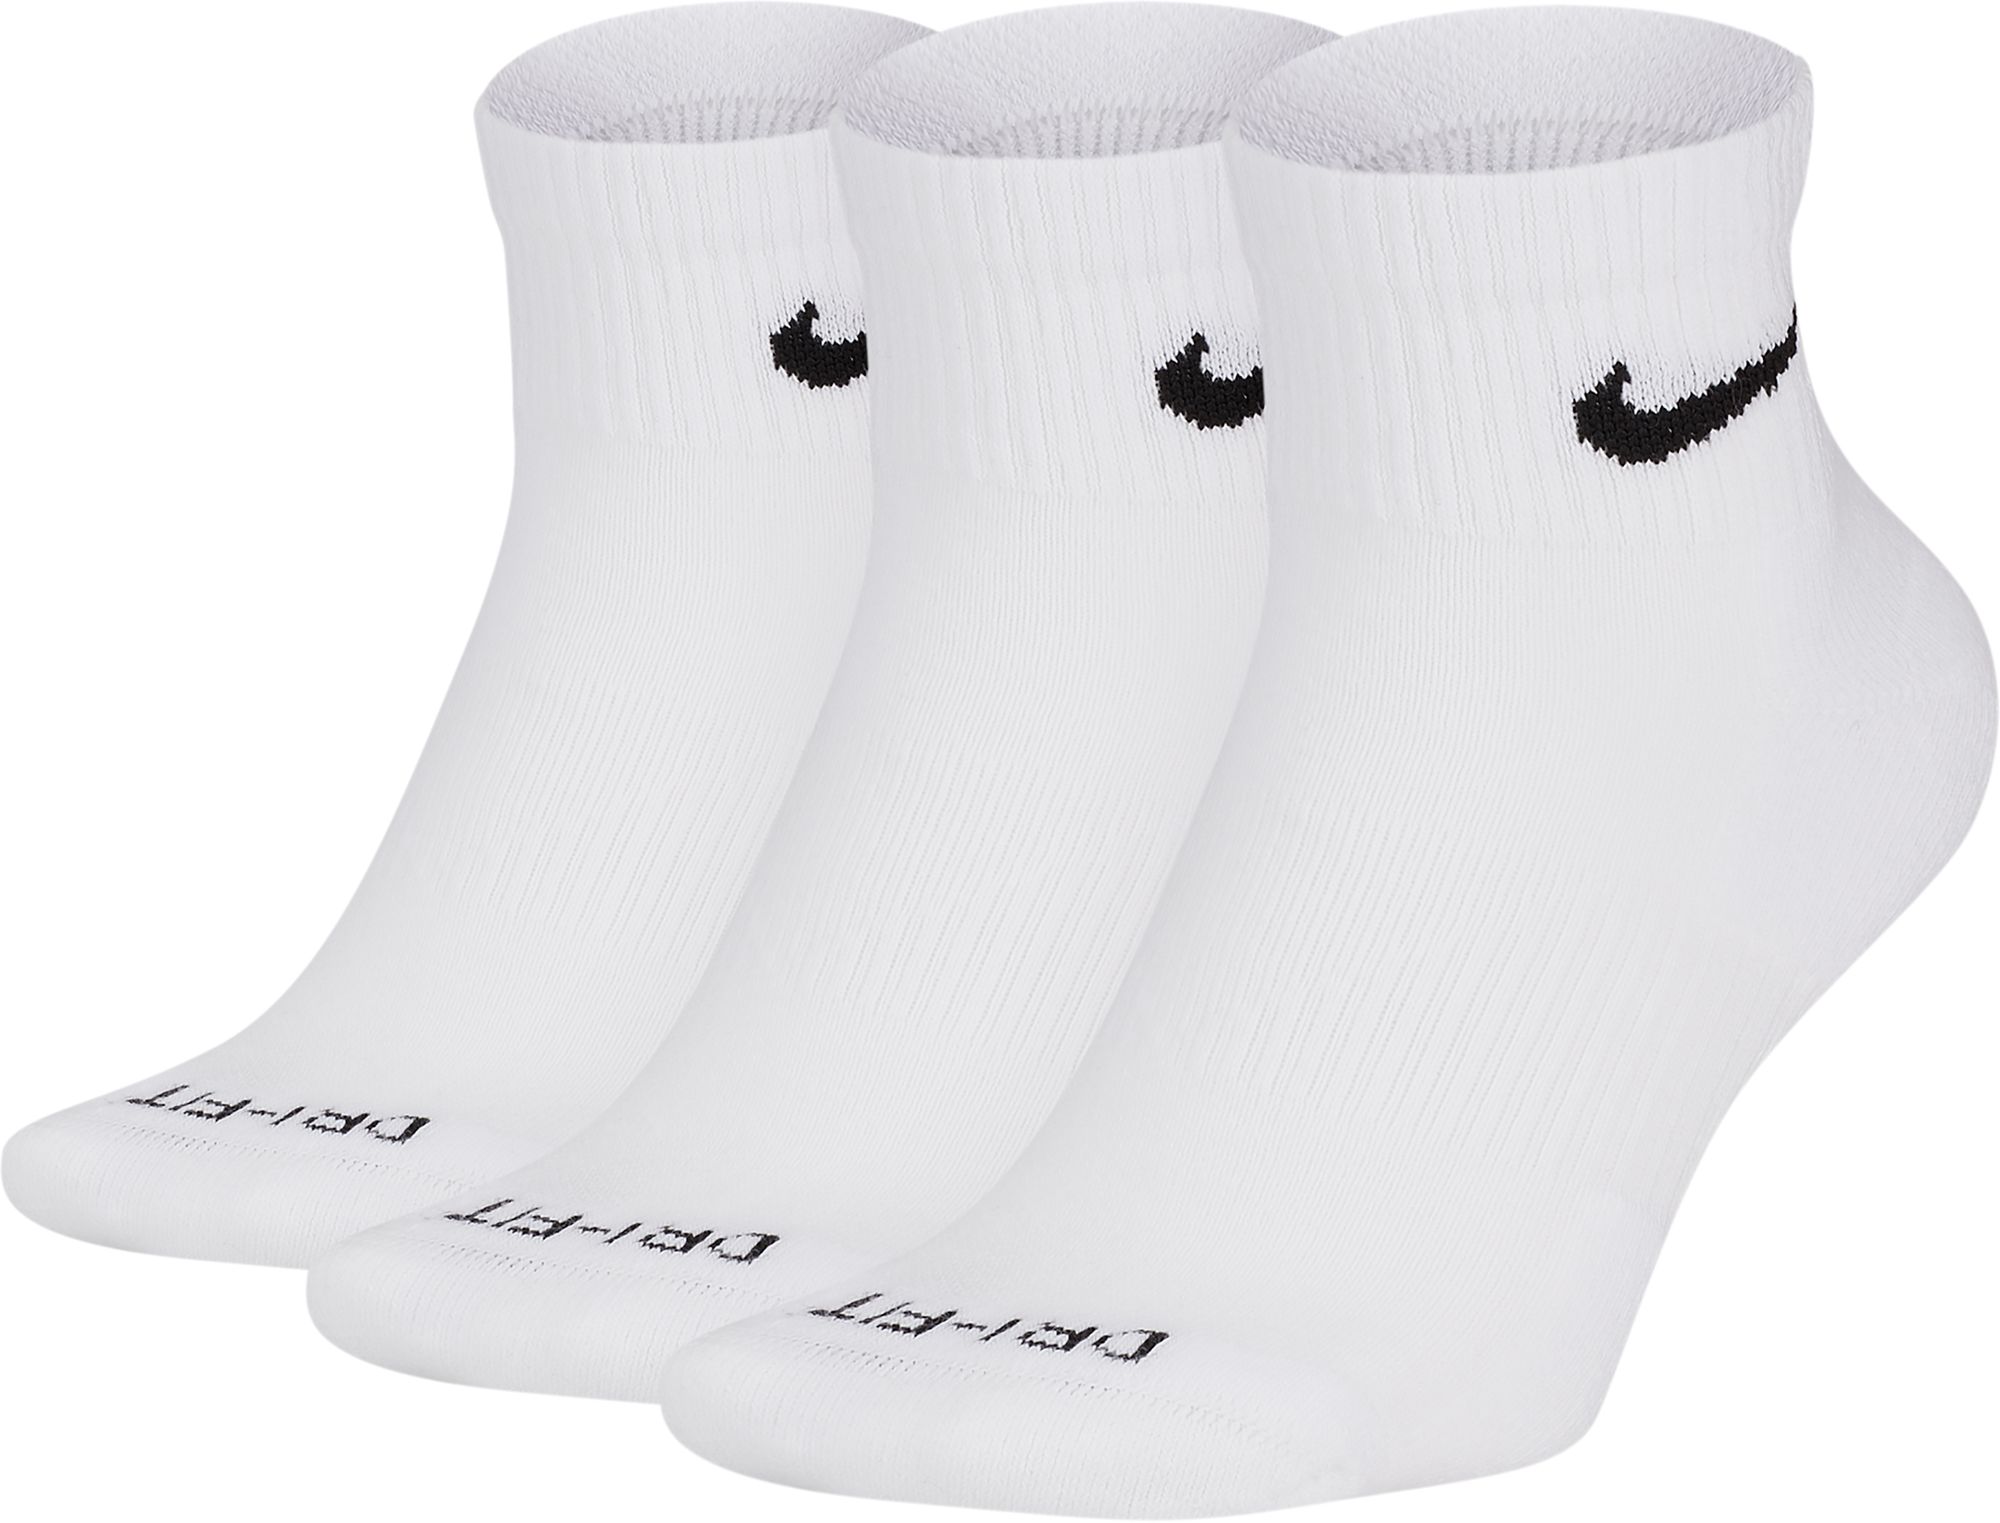 women's nike white quarter socks 